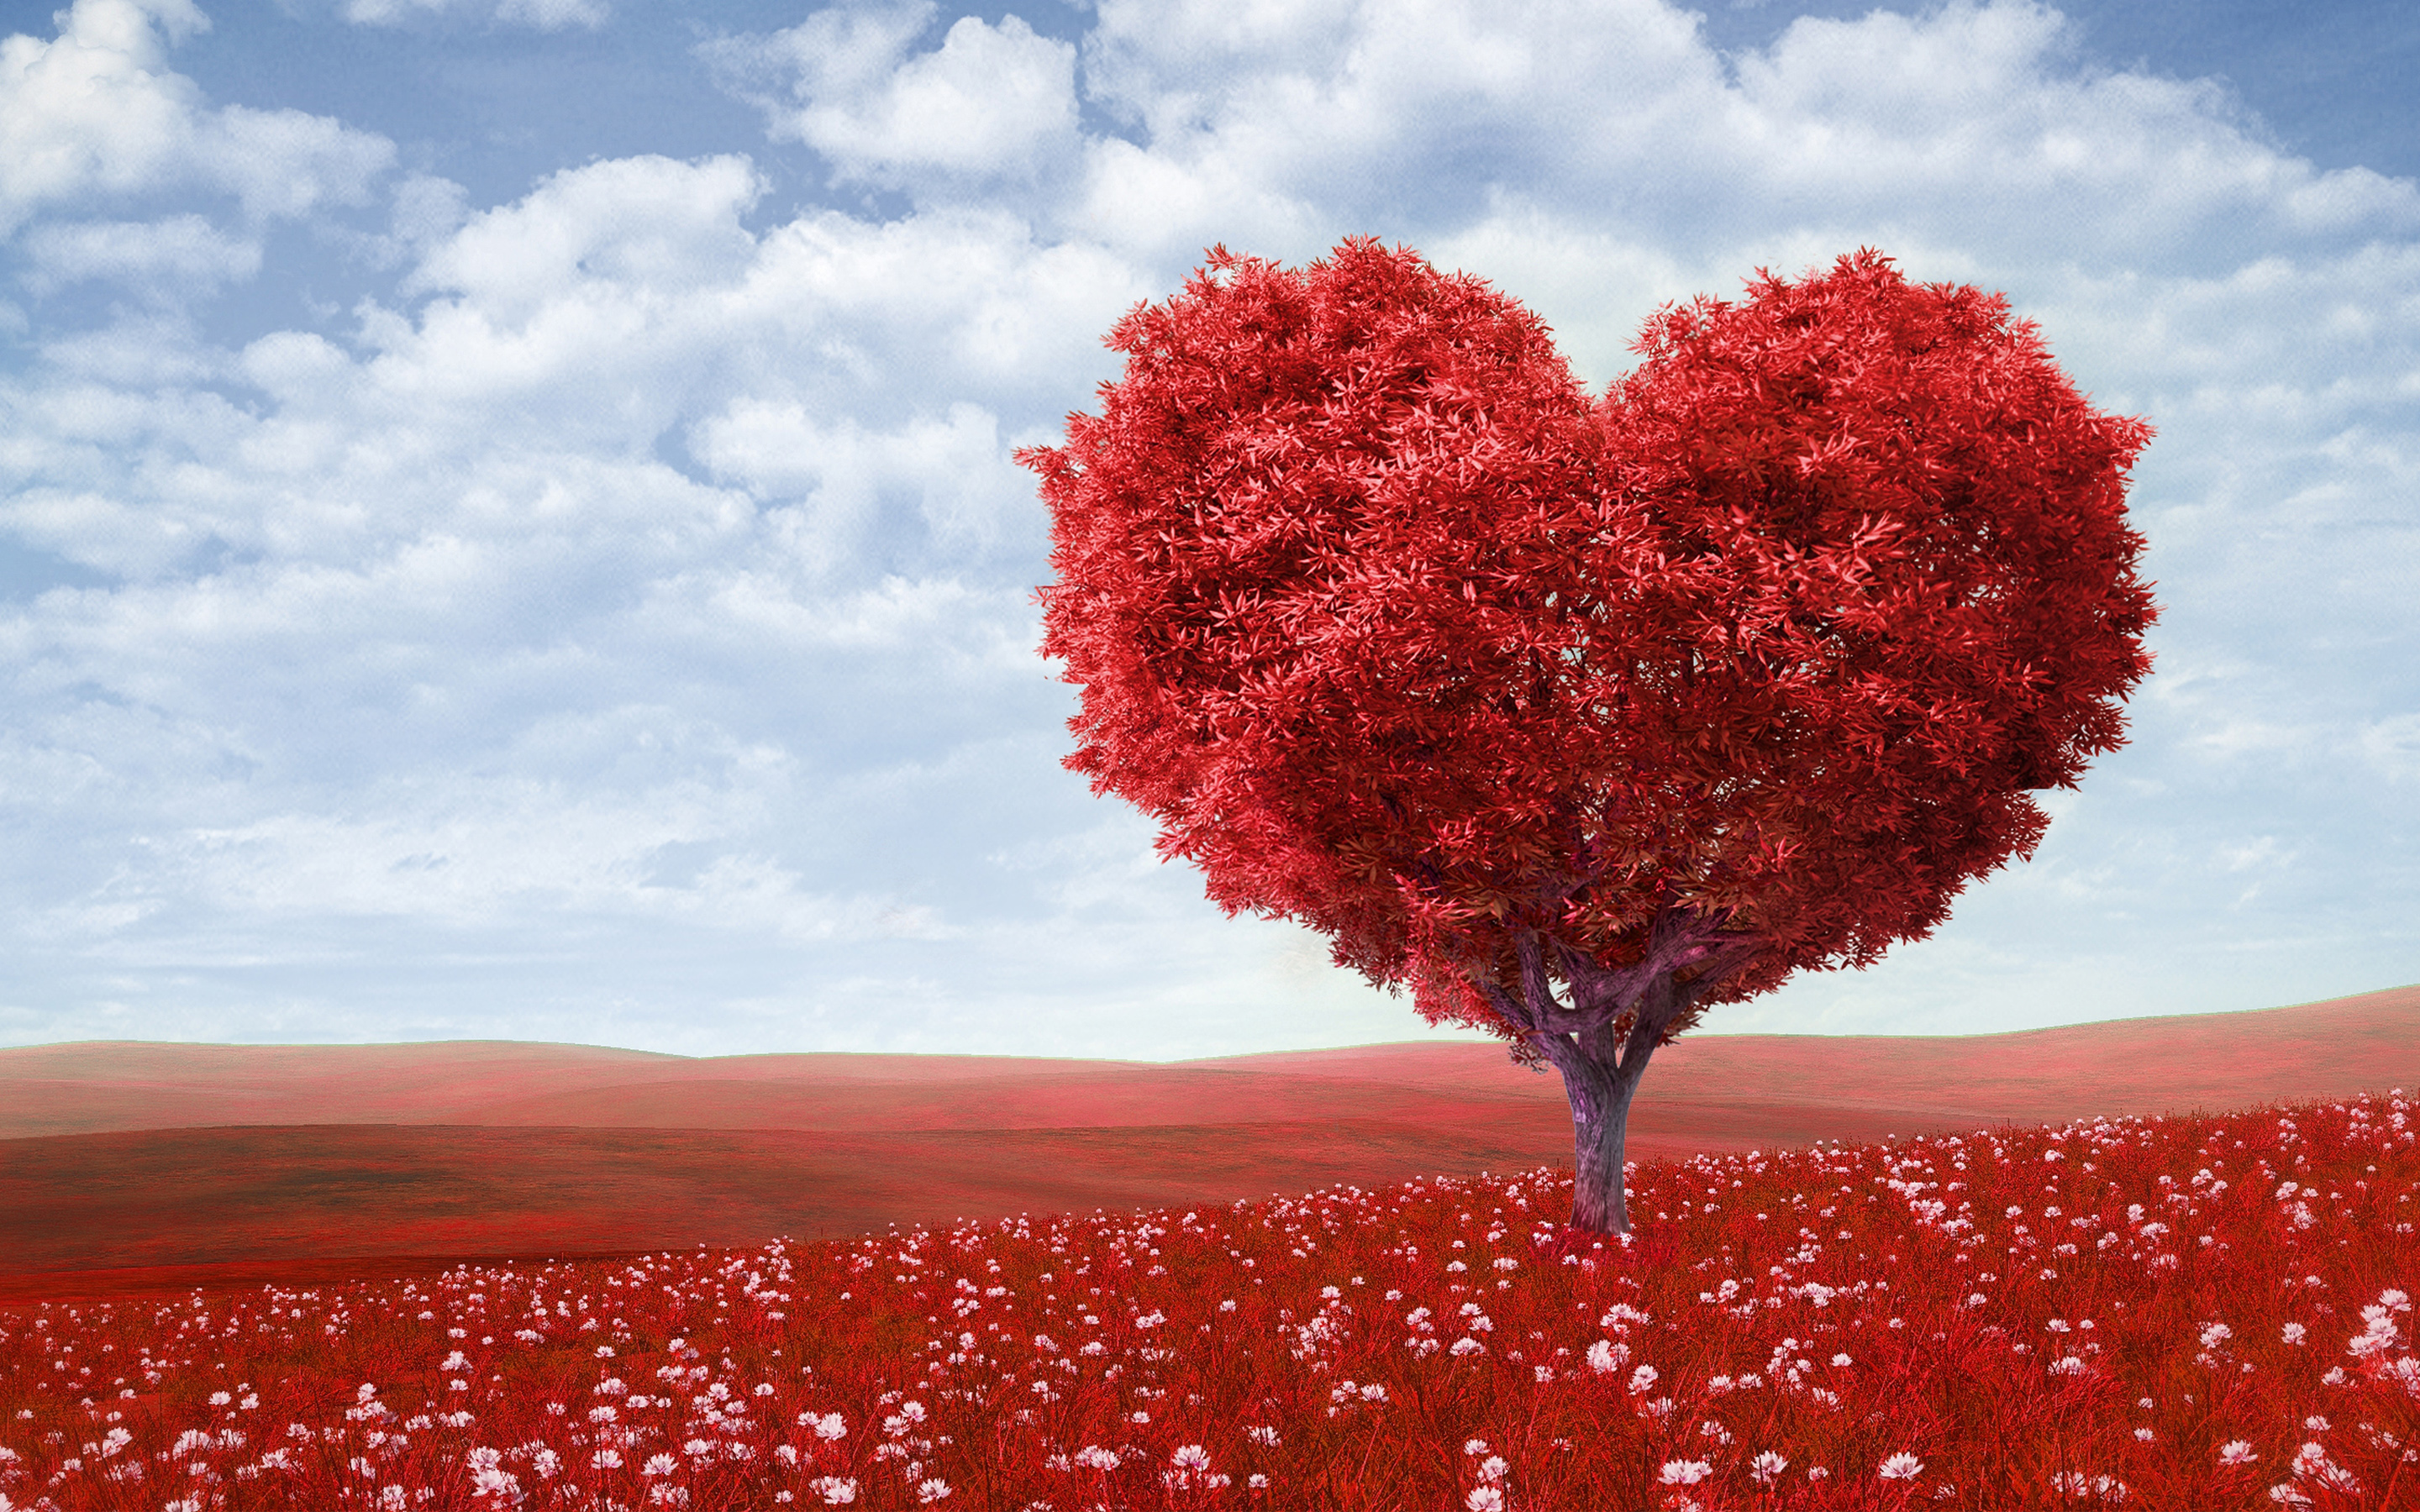 Red Love Heart Tree764739230 - Red Love Heart Tree - tree, Tomorrow, Love, Heart